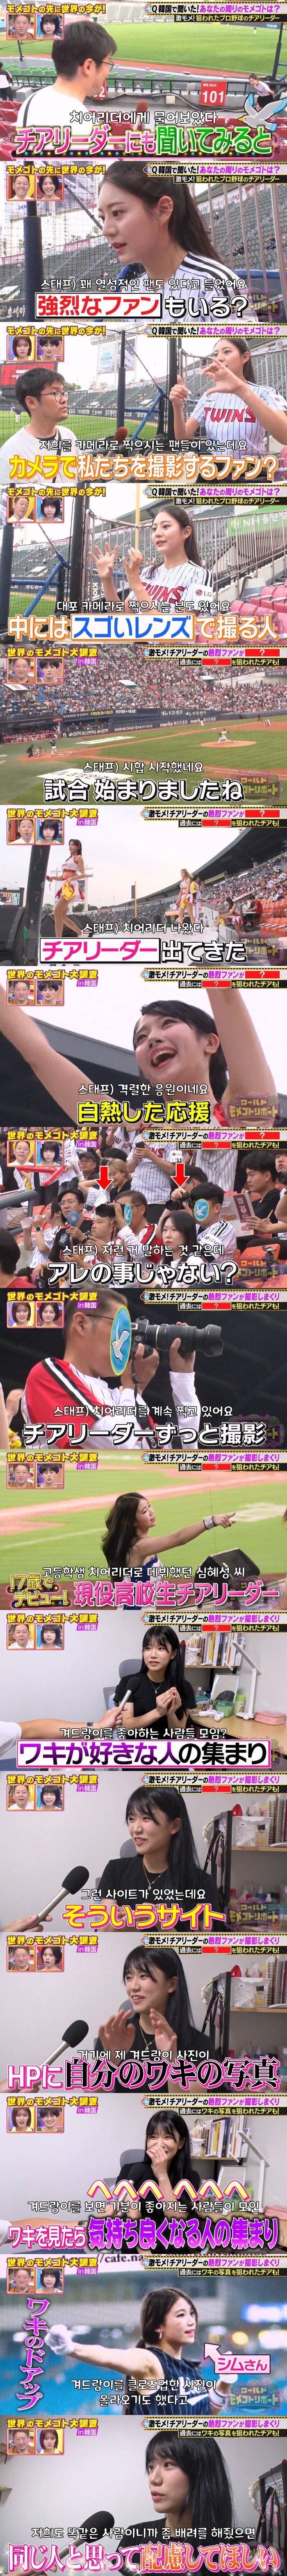 일본 방송에 나온 한국 치어리더의 고충.jpg